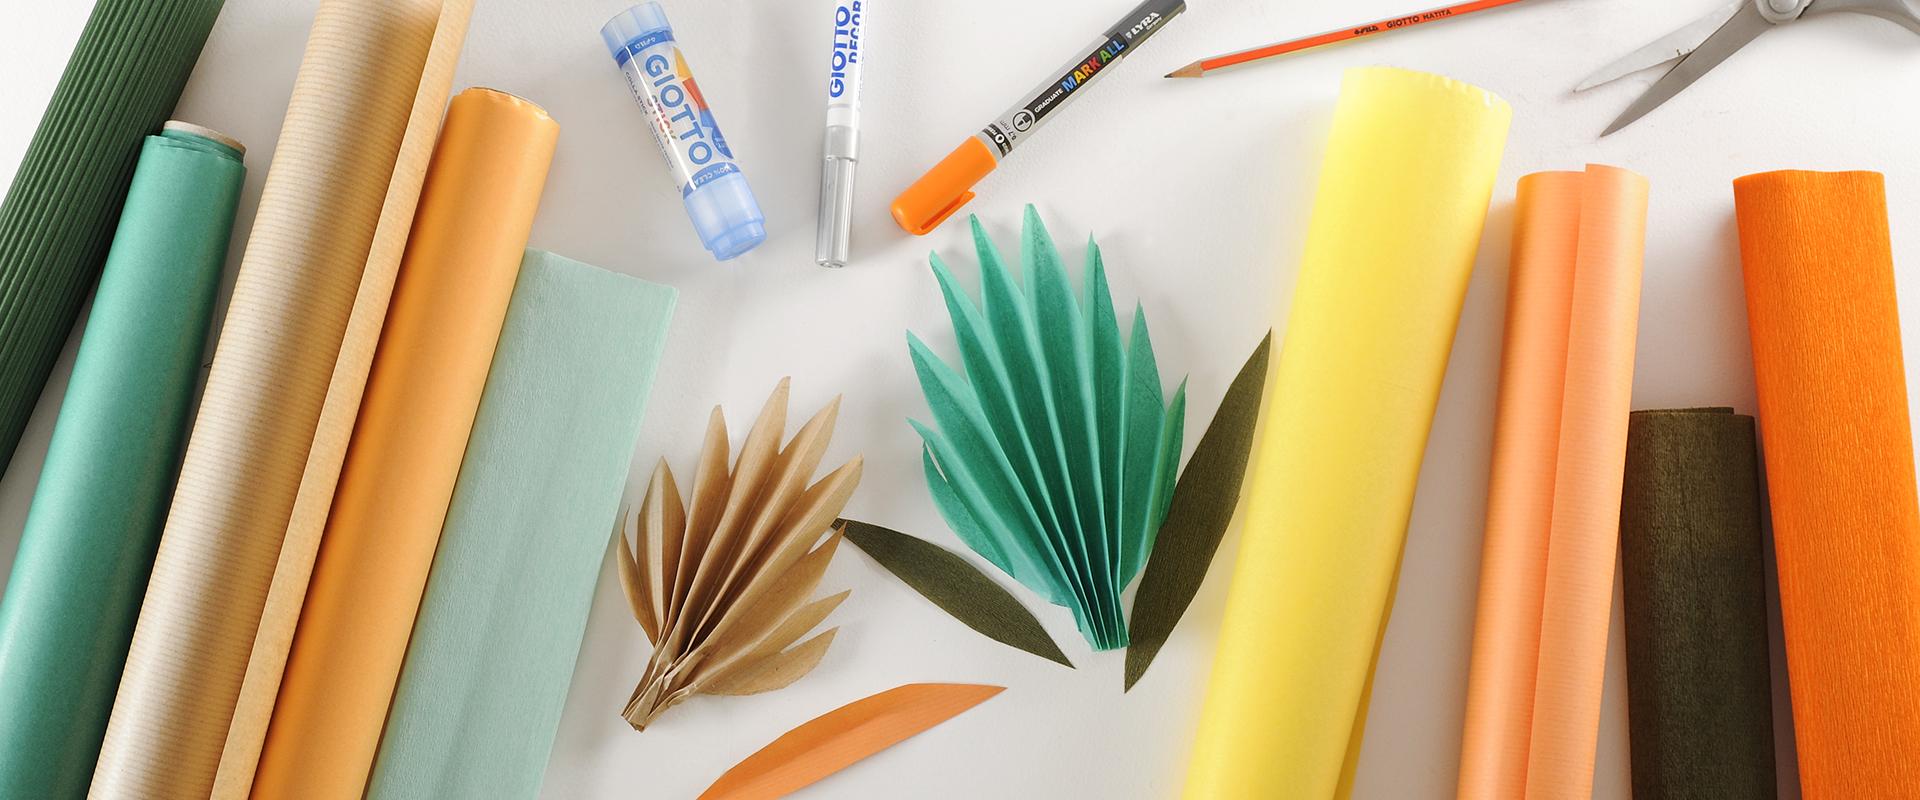 Acquistare Rotoli di carta crespa per bricolage, colorati online